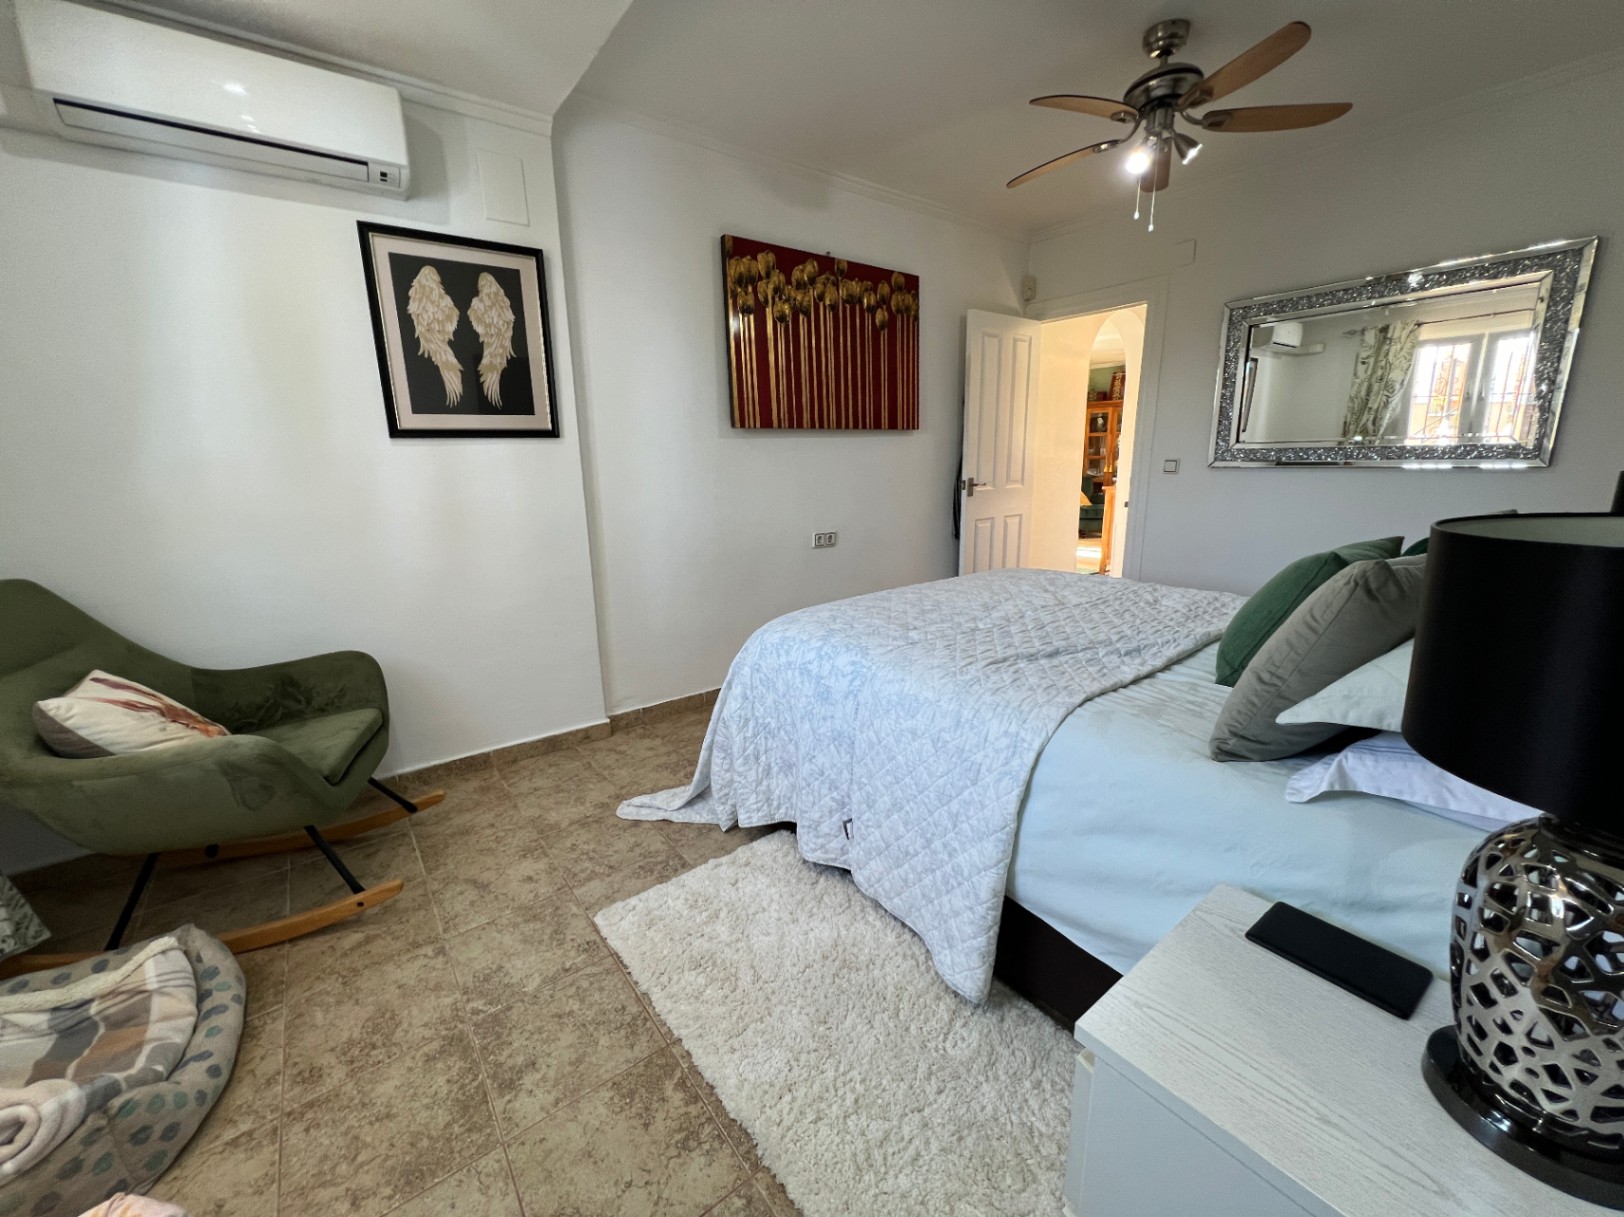 4 BED VILLA WITH PRIVATE POOL IN LA FLORIDA.